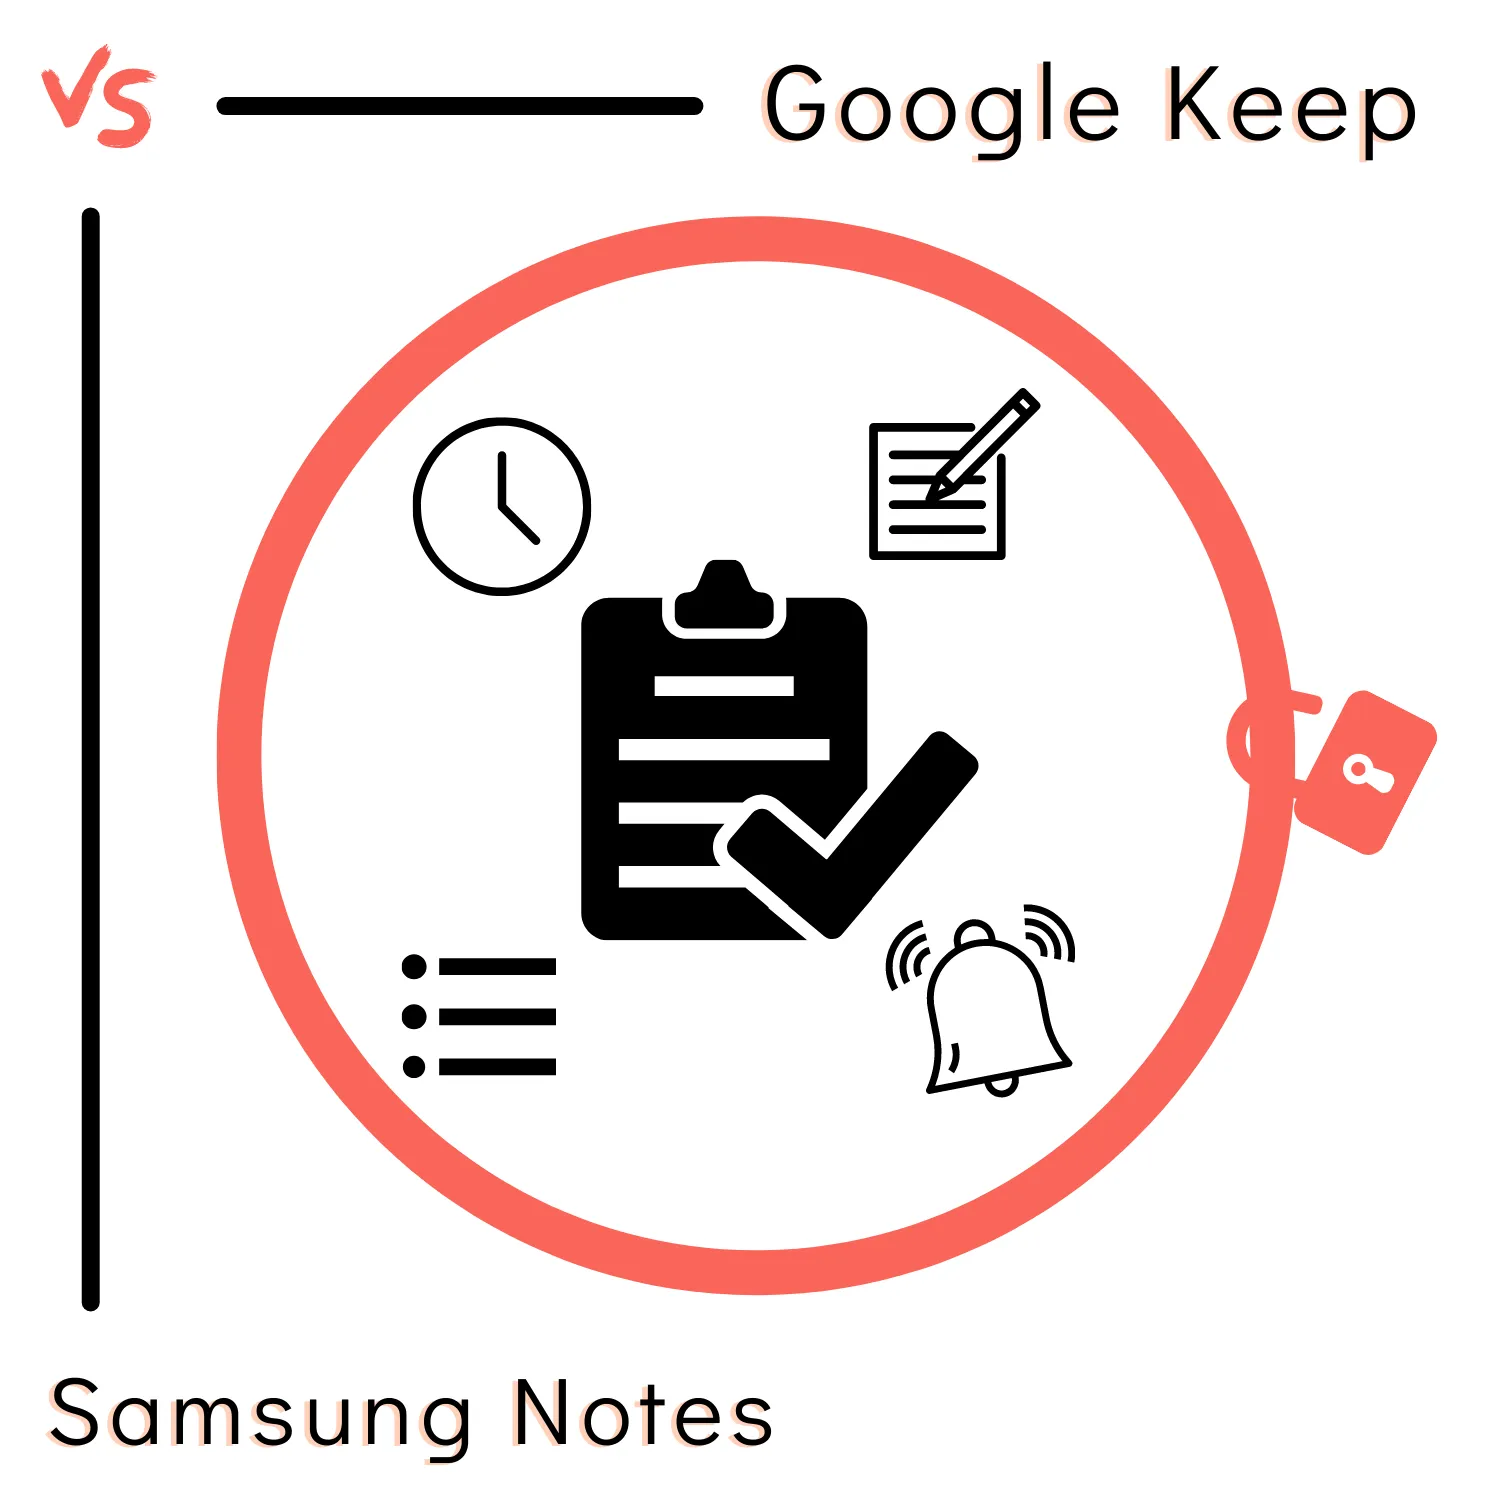 Samsung Notes vs. Google Keep